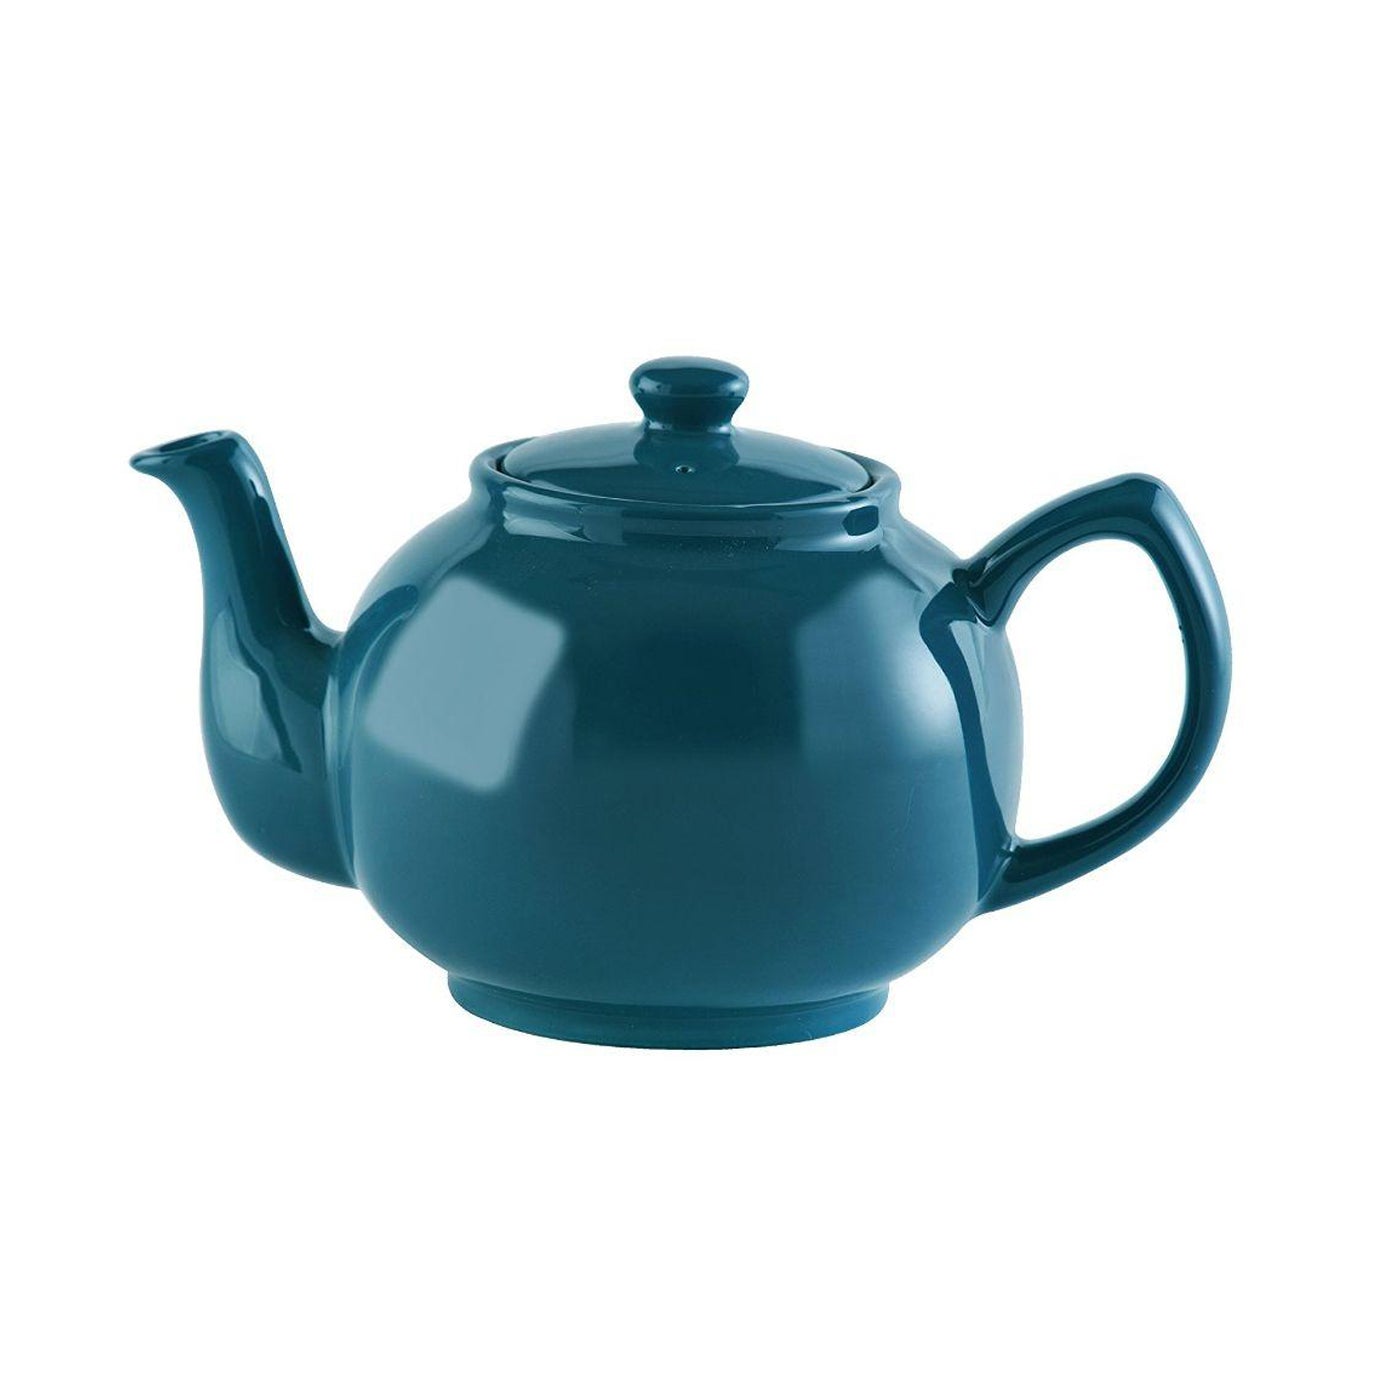 PRICE & KENSINGTON 6 Cup Teapot | Teal